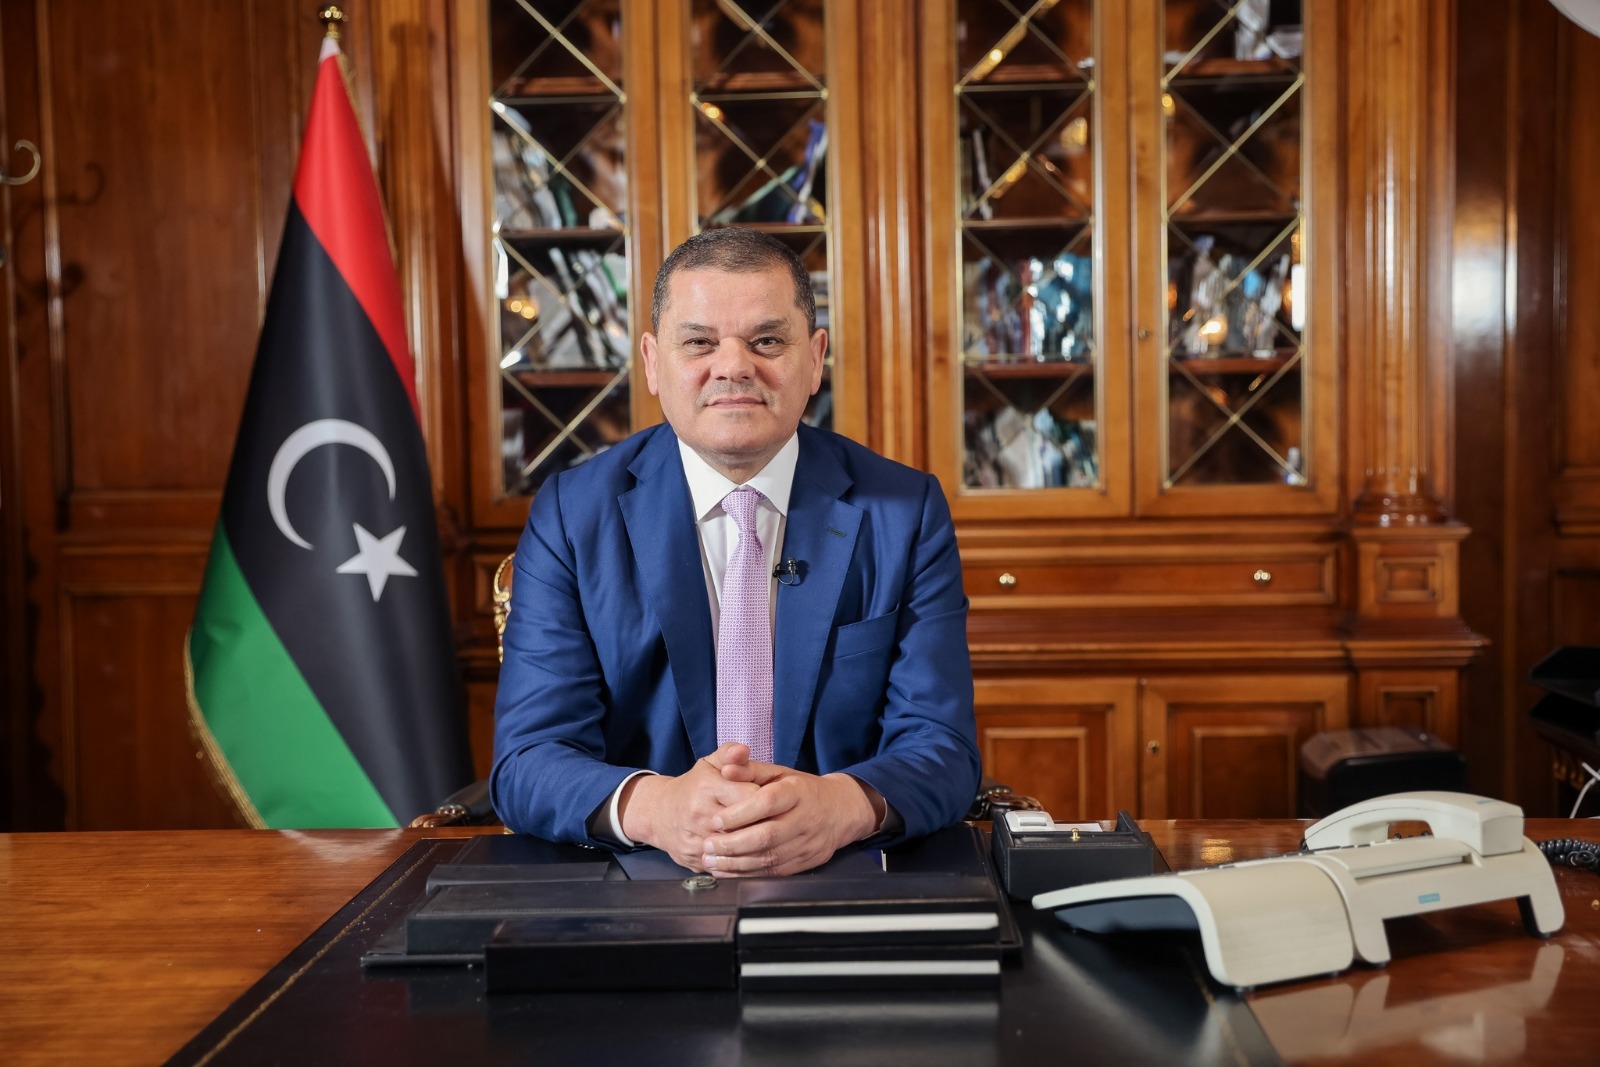 عاجل// رئيس الوزراء عبد الحميد الدبيبة: الحكومة الإيطالية أبلغتنا بقرارها رفع الحظر الجوي المفروض على الطيران المدني الليبي منذ 10 سنوات لتستأنف الرحلات في سبتمبر القادم.